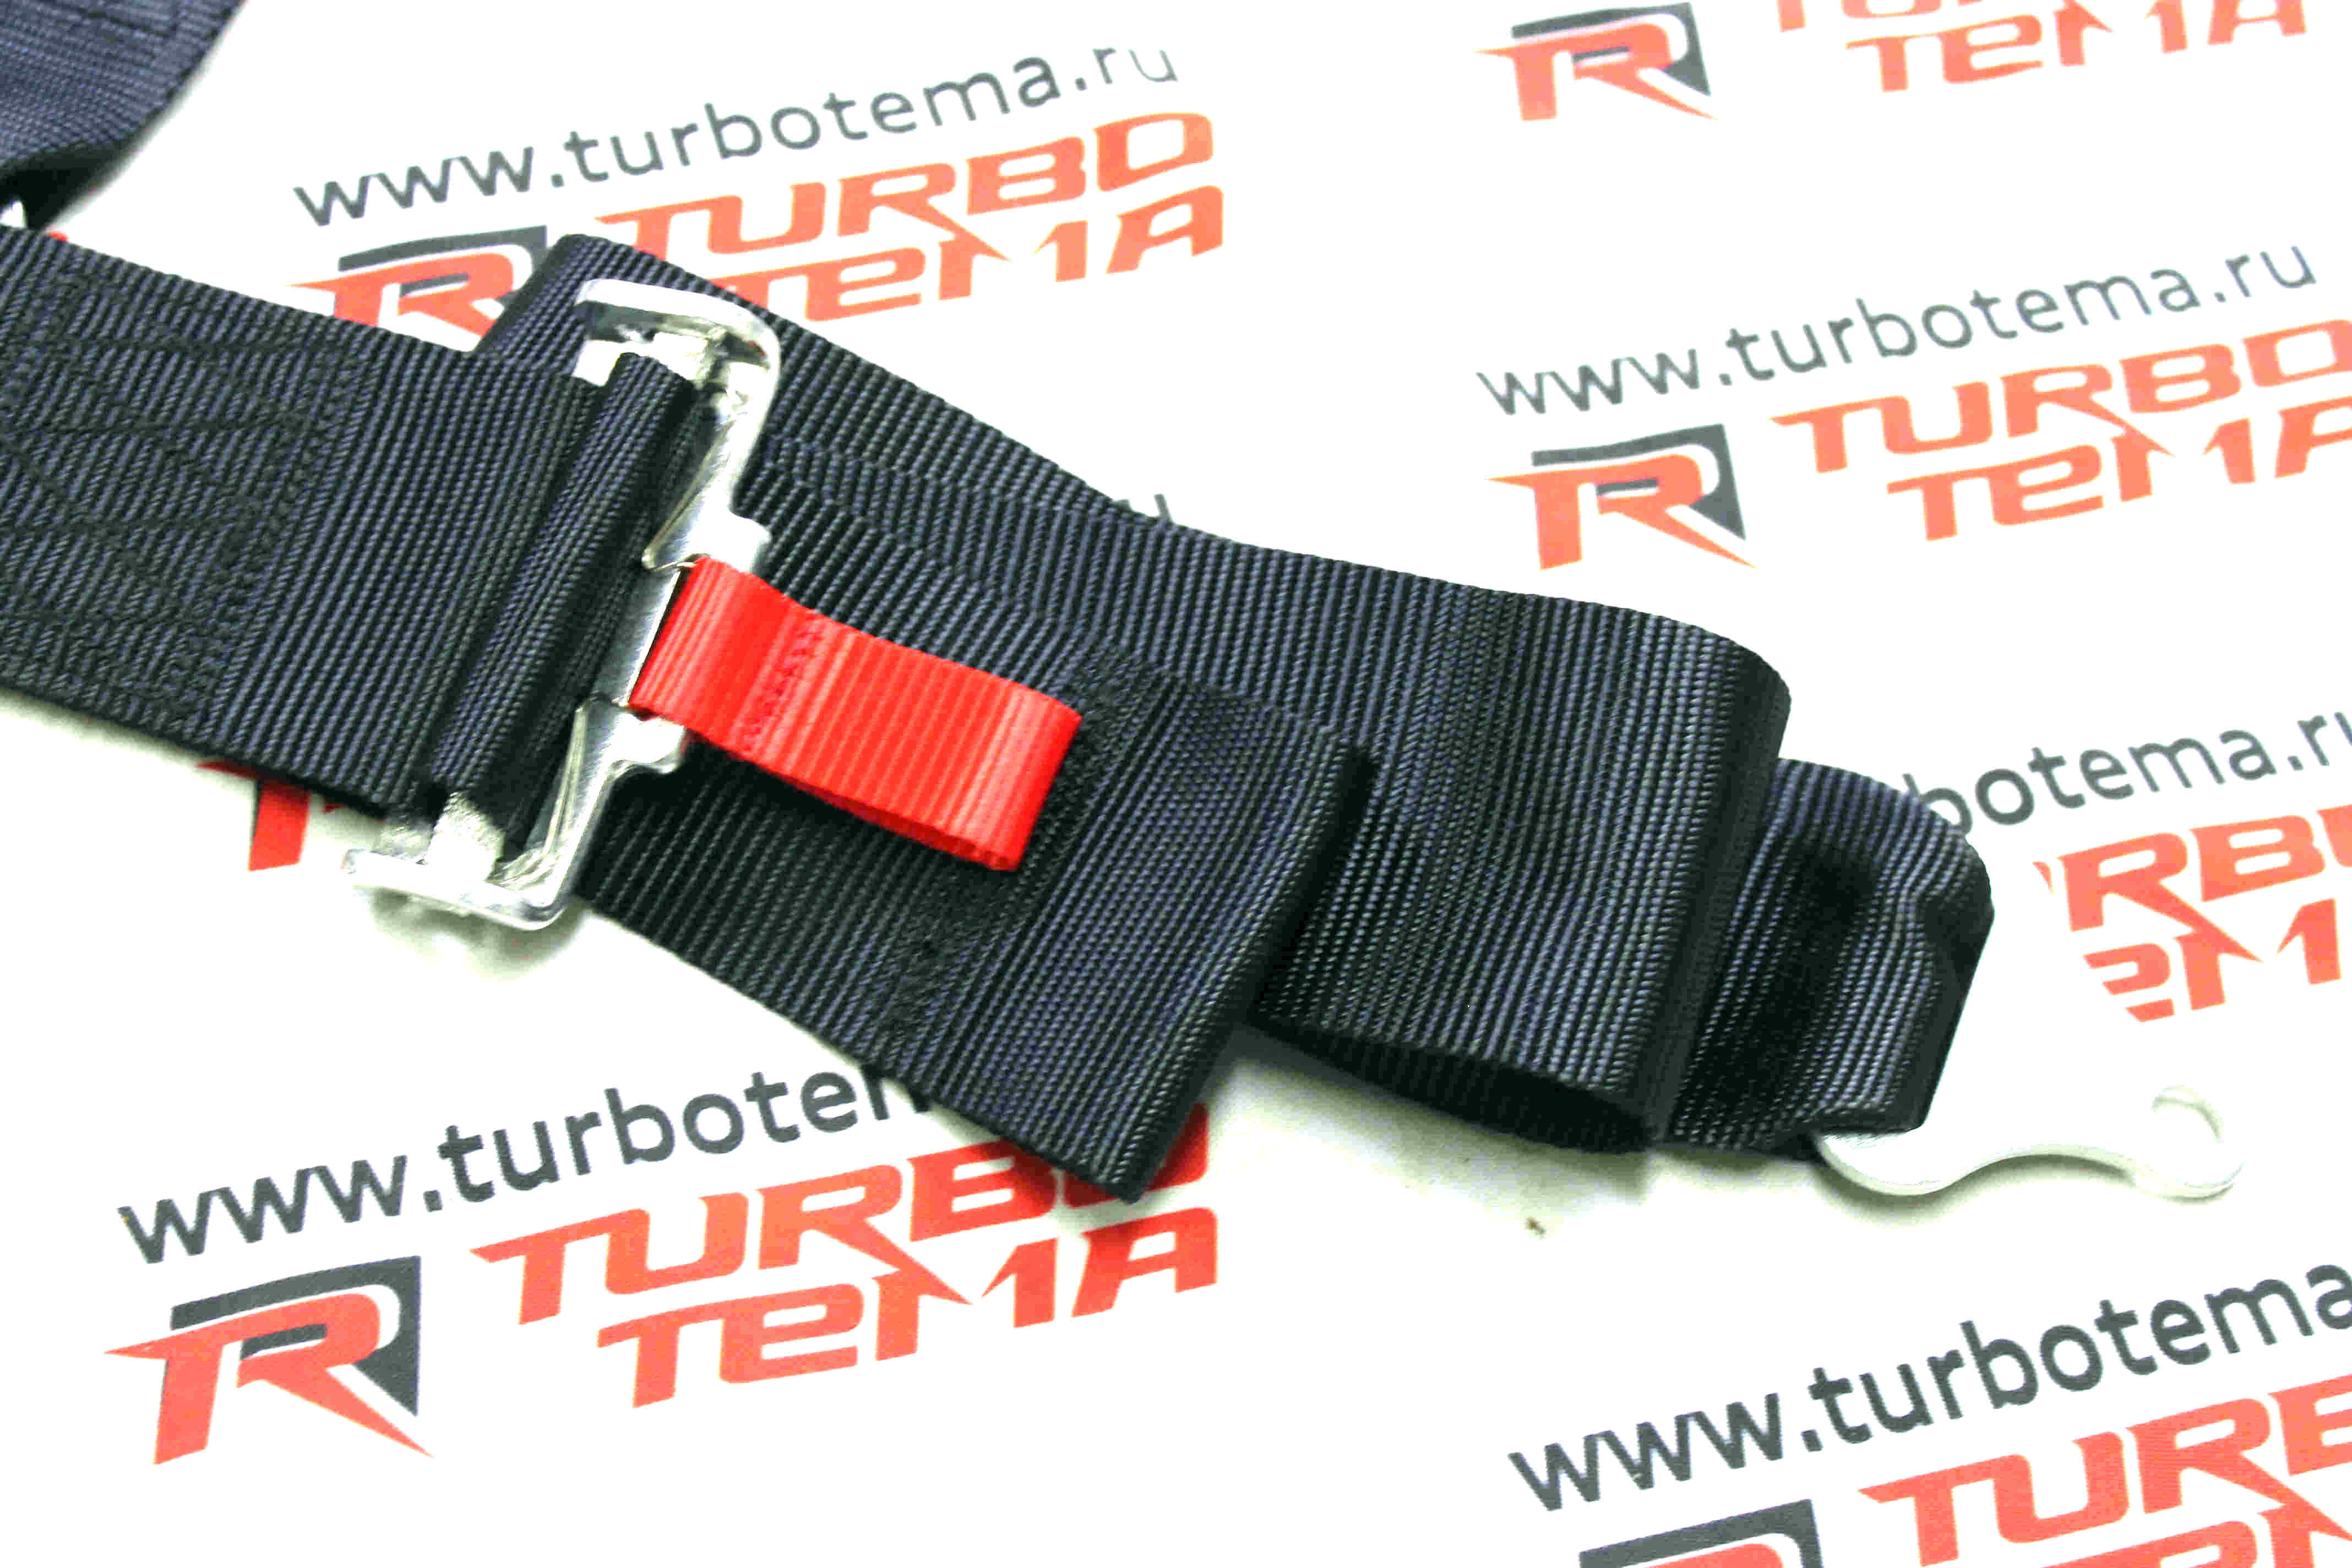 Ремни безопасности "TURBOTEMA" 5-х точечные, 3" ширина, быстросъемные, мягкие вставки (черные) 4008. Фото �7